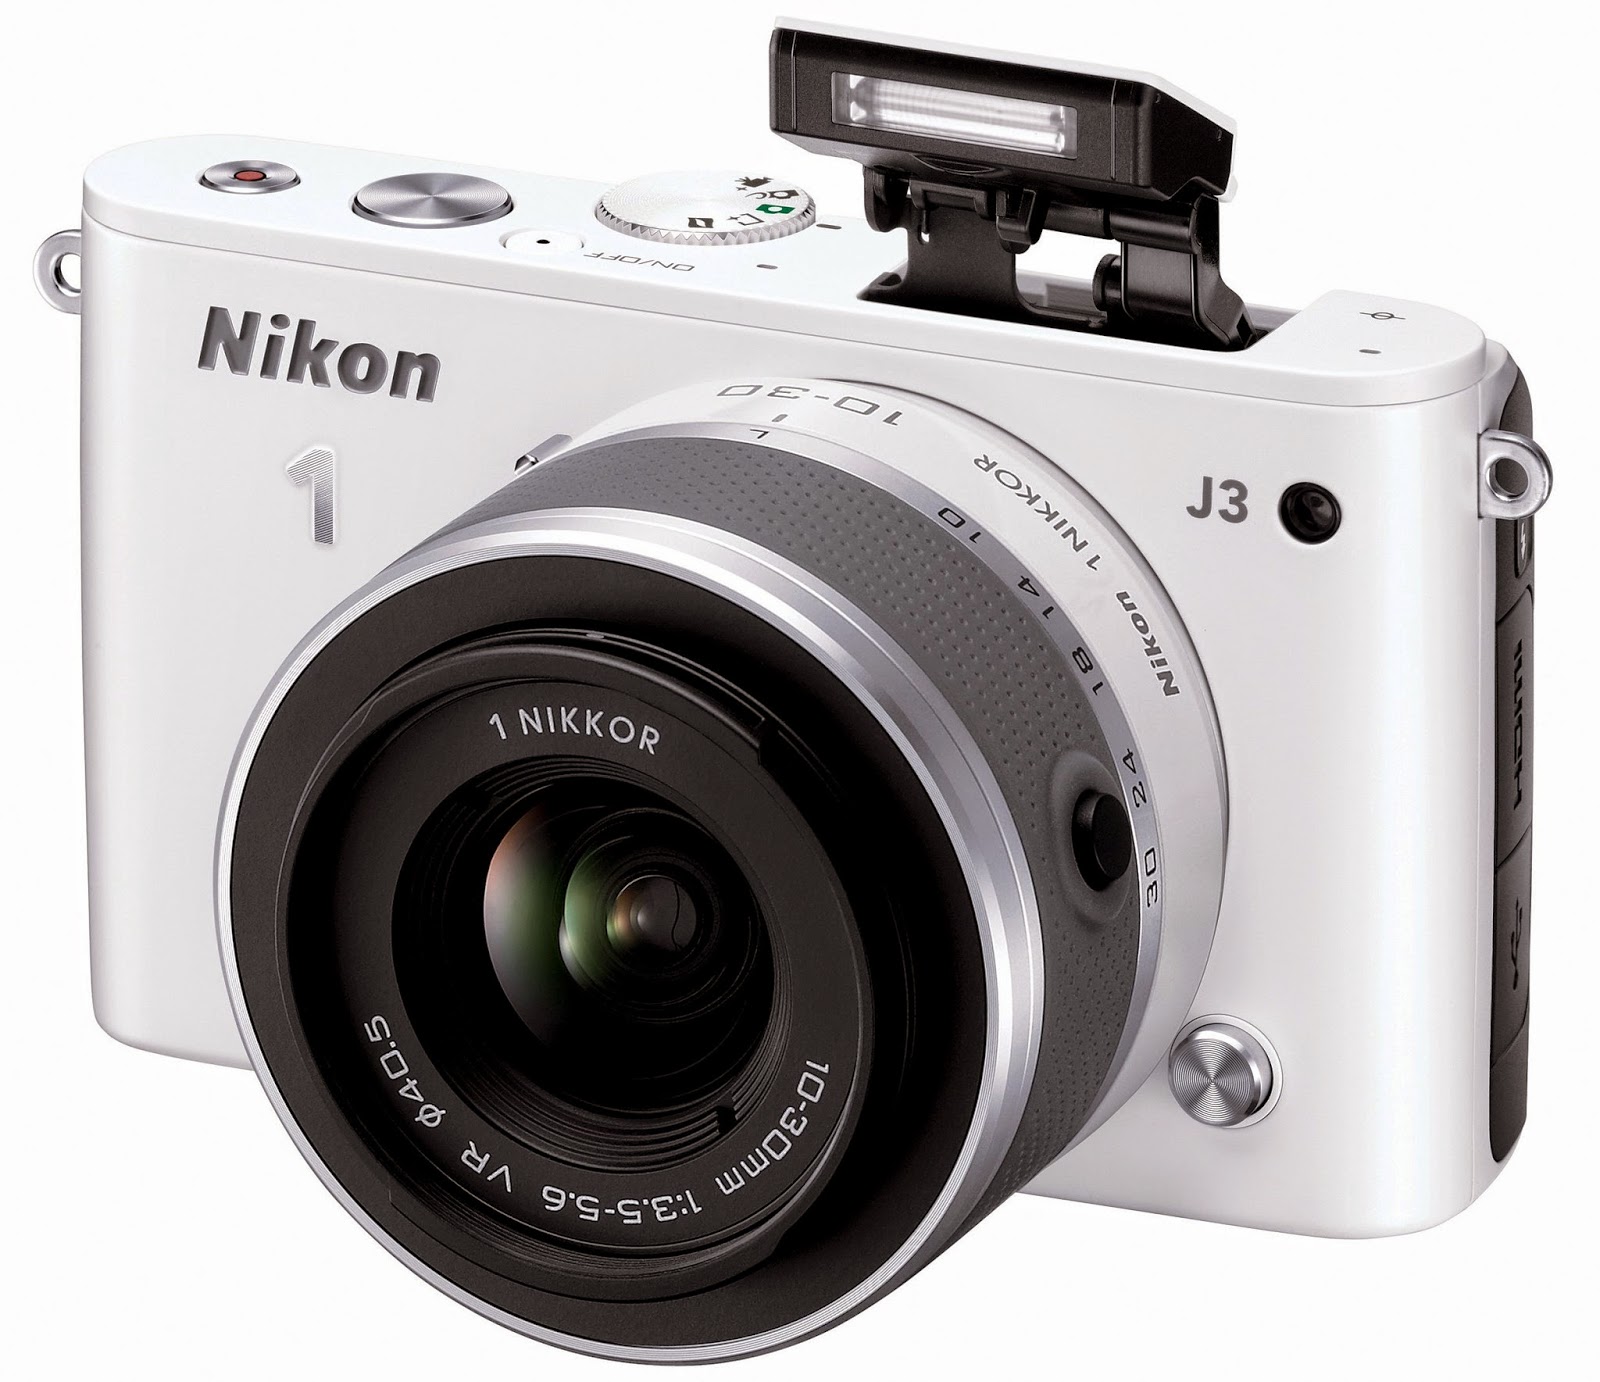 Review dan Harga Nikon 1 J3 - Update November 2014